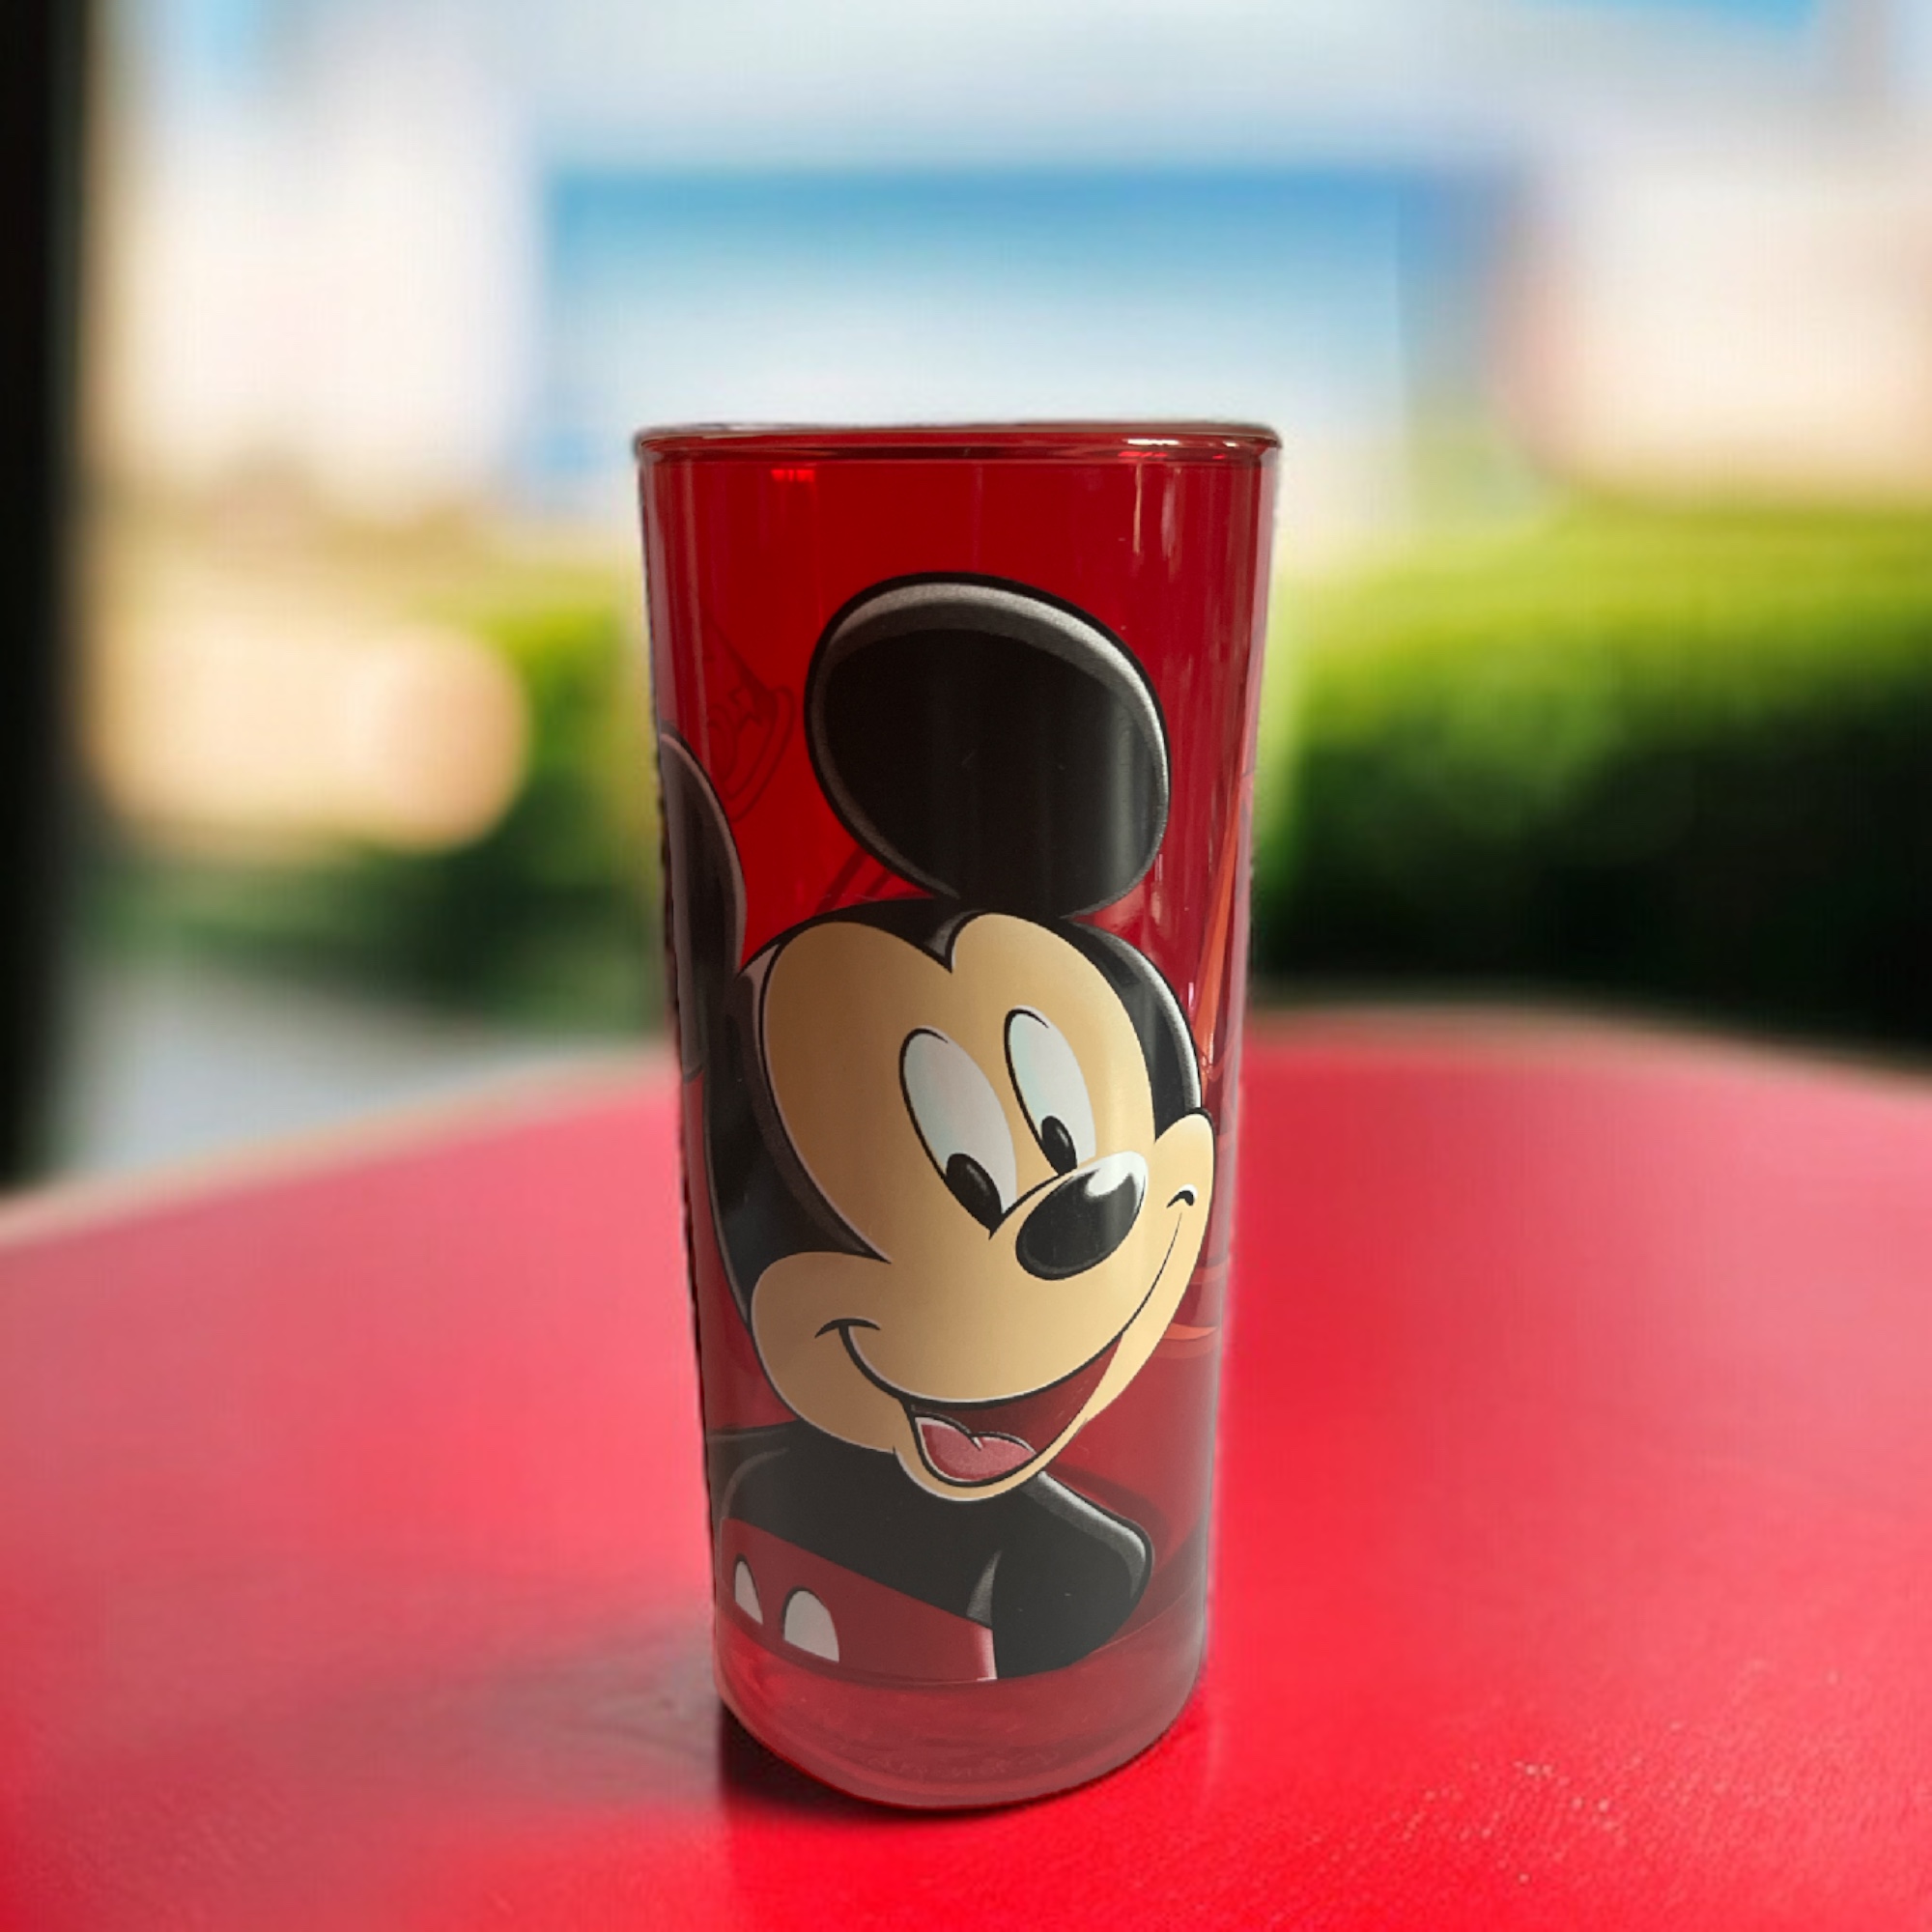 Disney - Mickey Mouse : Verre portrait - le palais des goodies